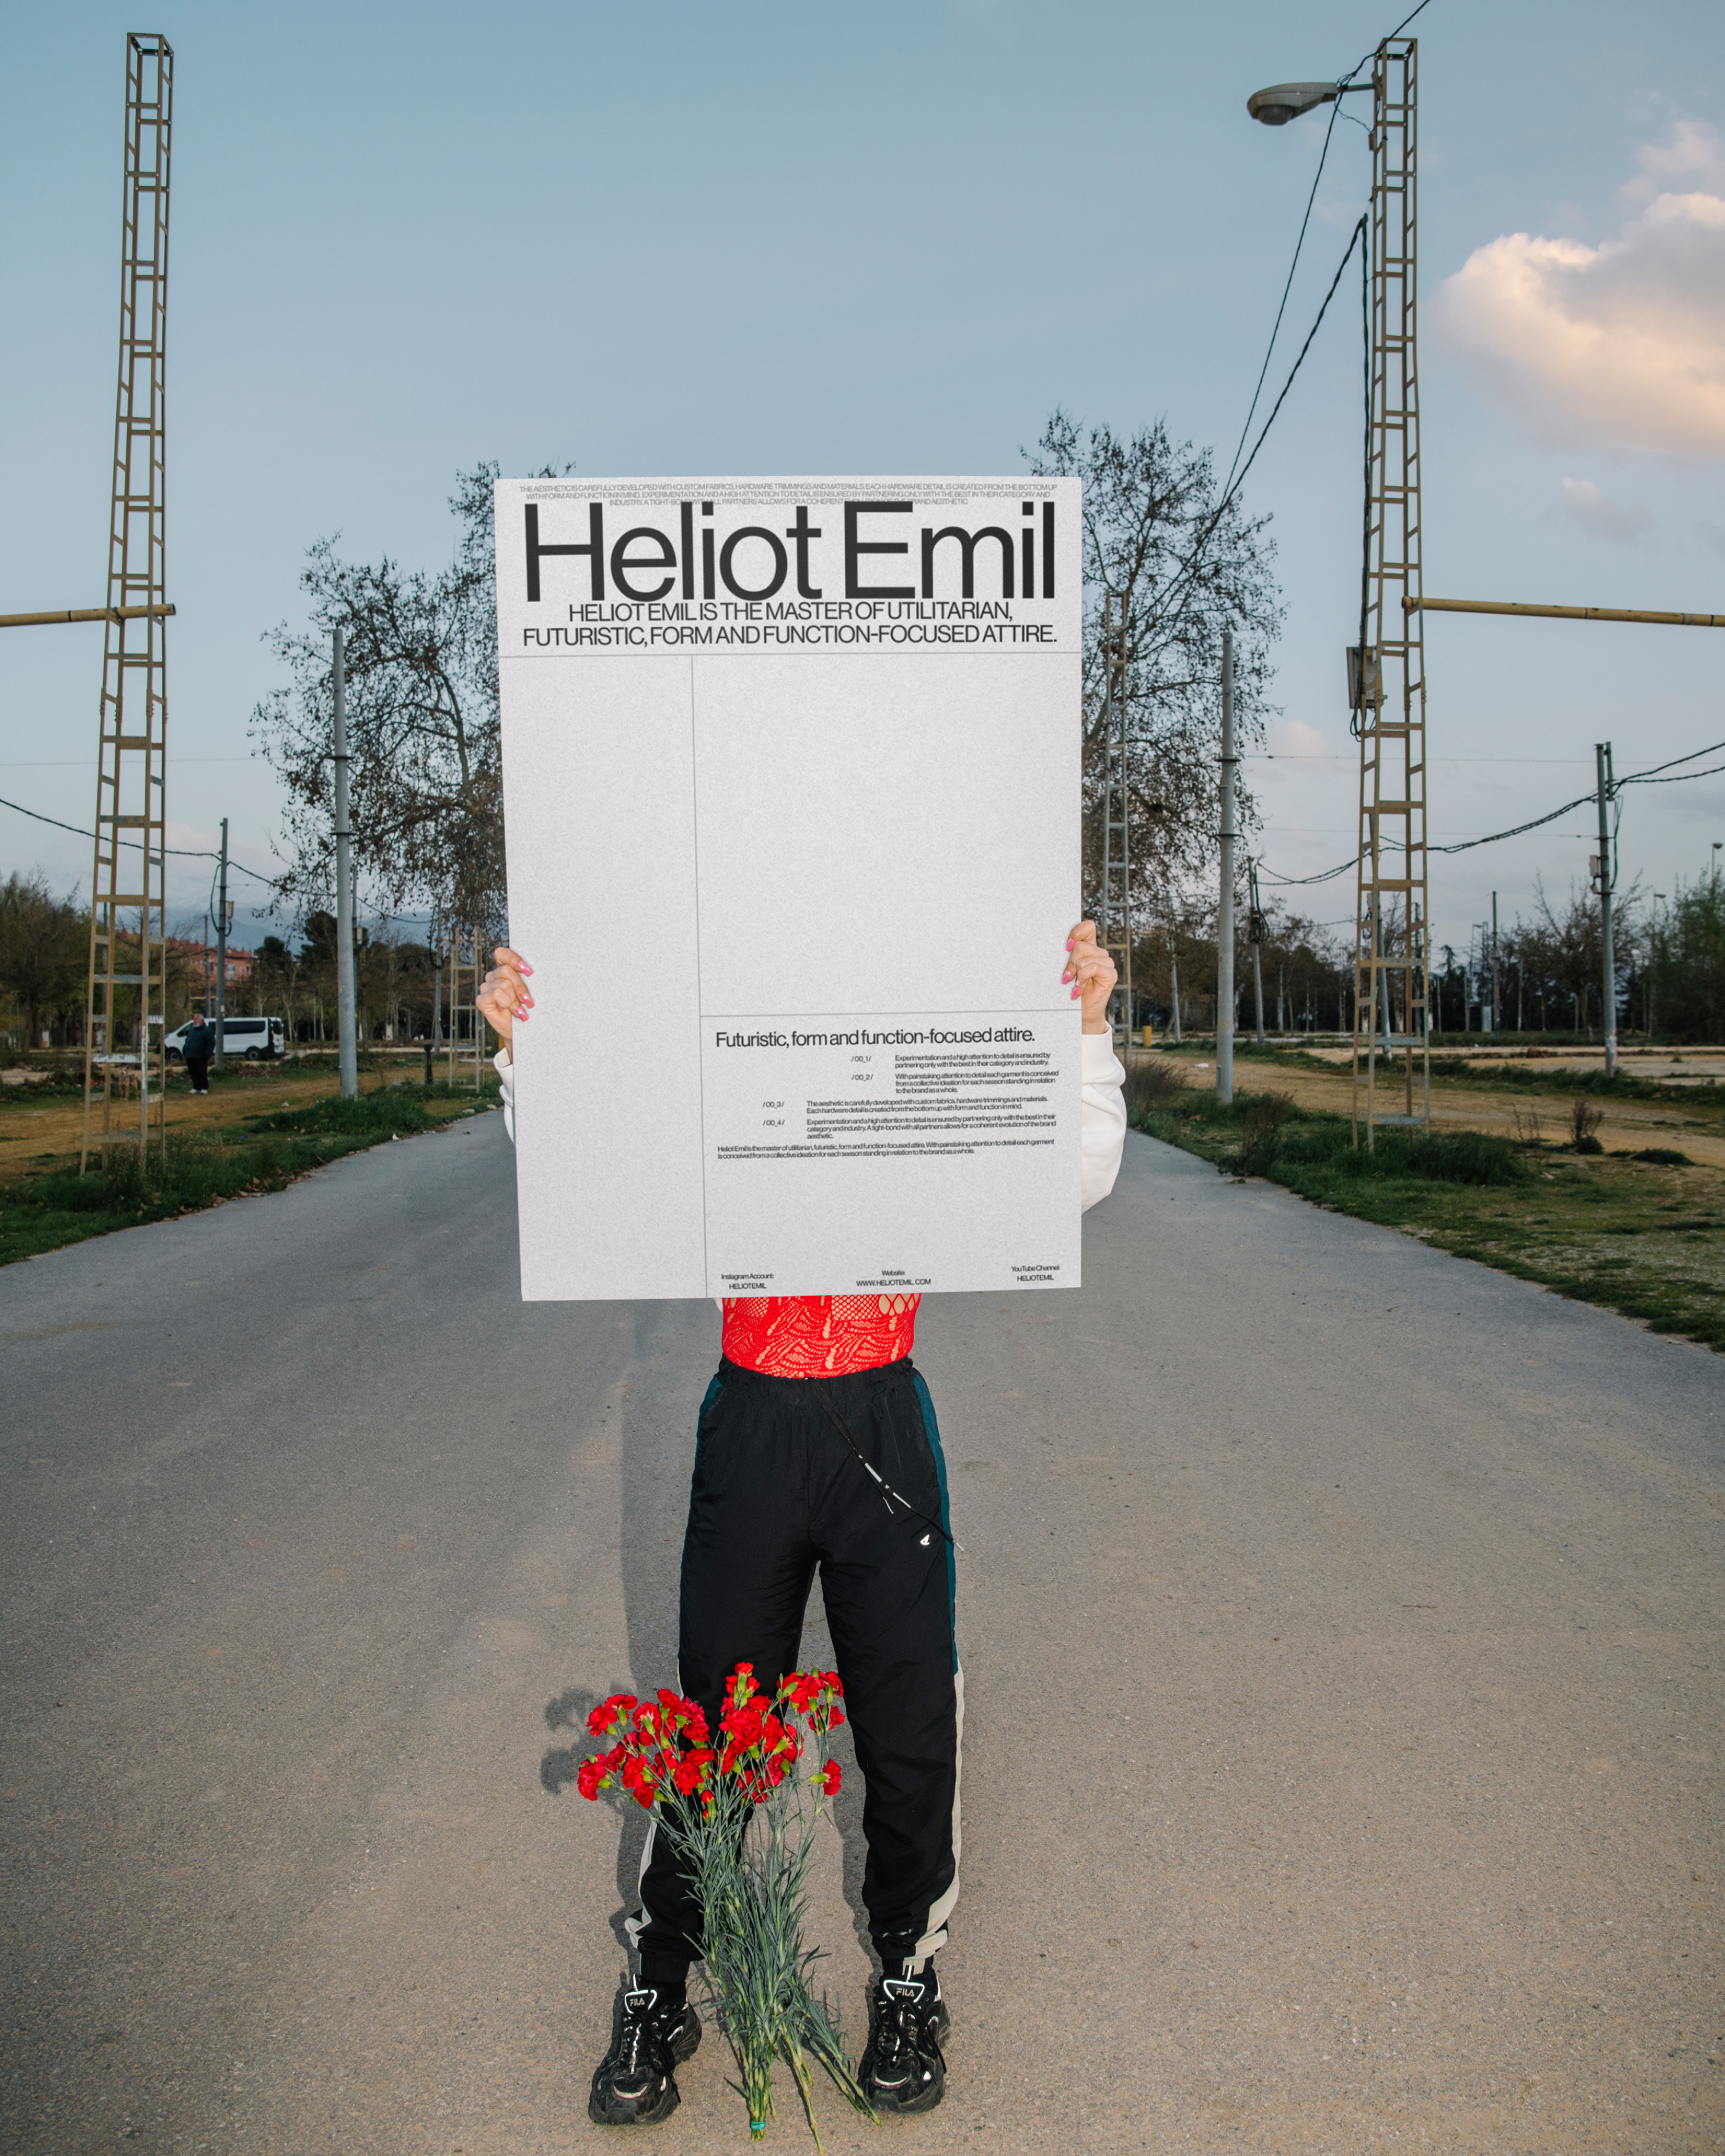 Heliot Emil — Изображение №4 — Интерфейсы, Брендинг, Анимация на Dprofile